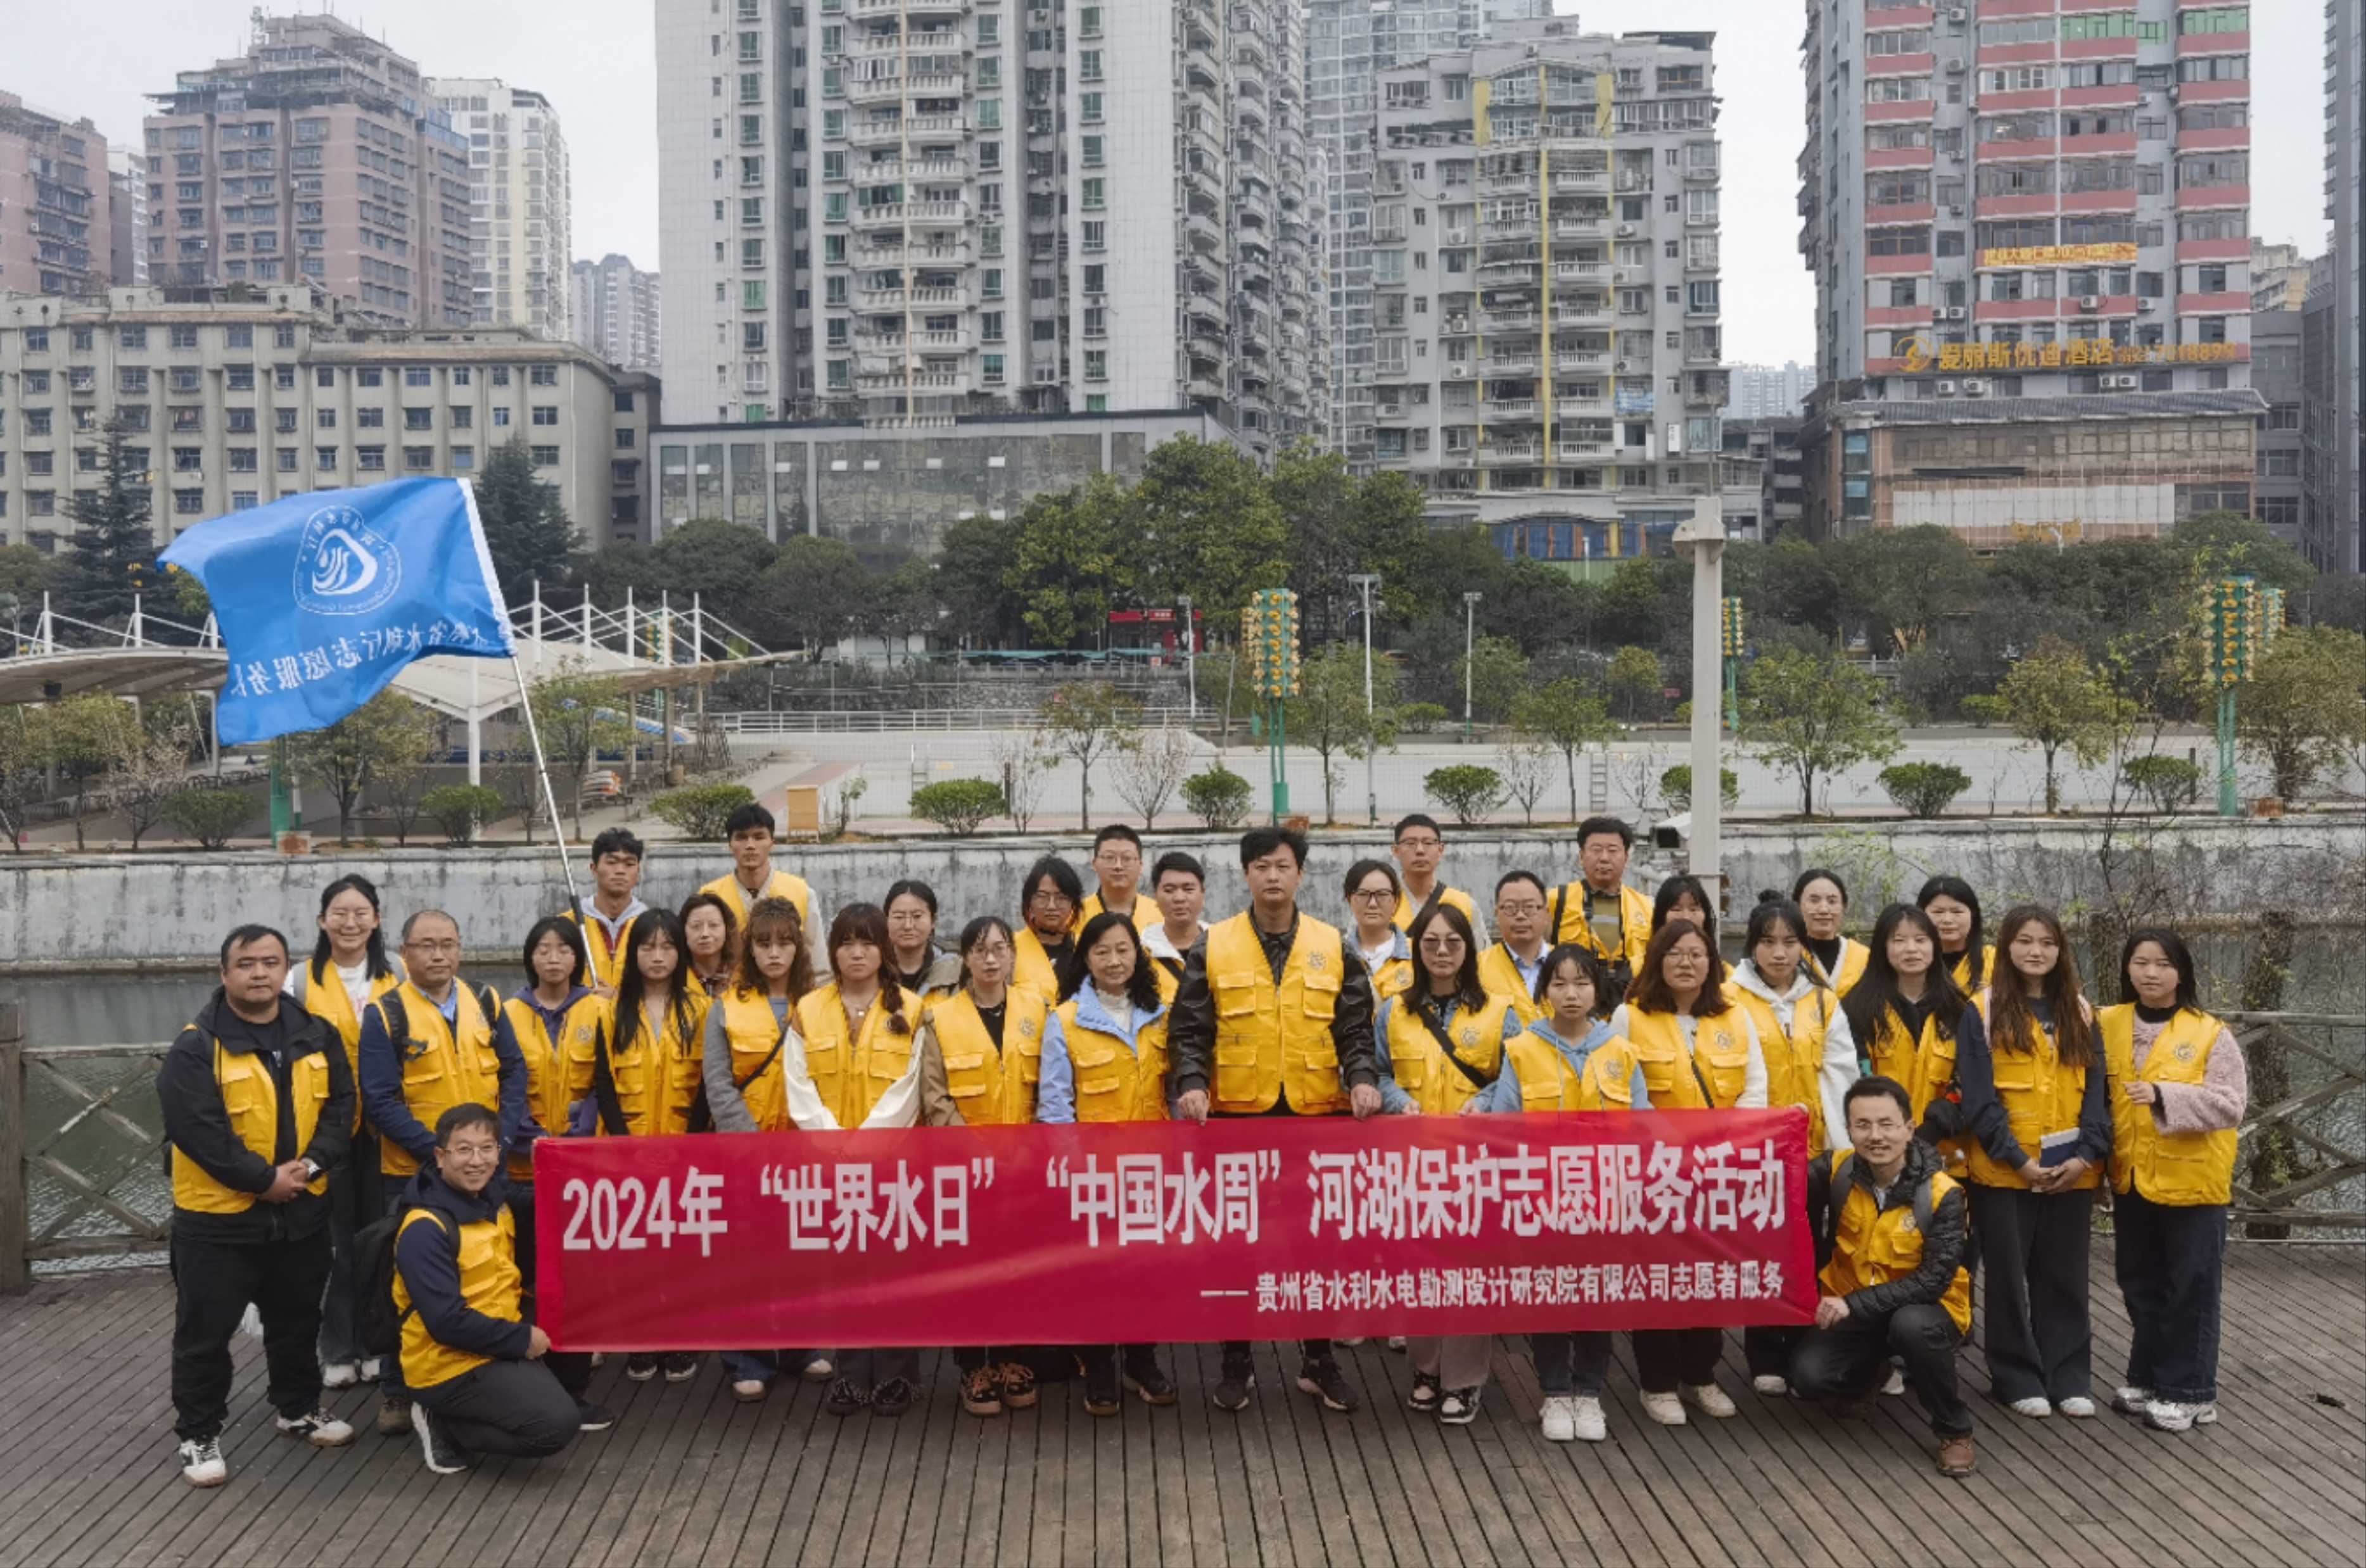 贵州水利院参加“世界水日”“中国水周”河湖保护志愿服务